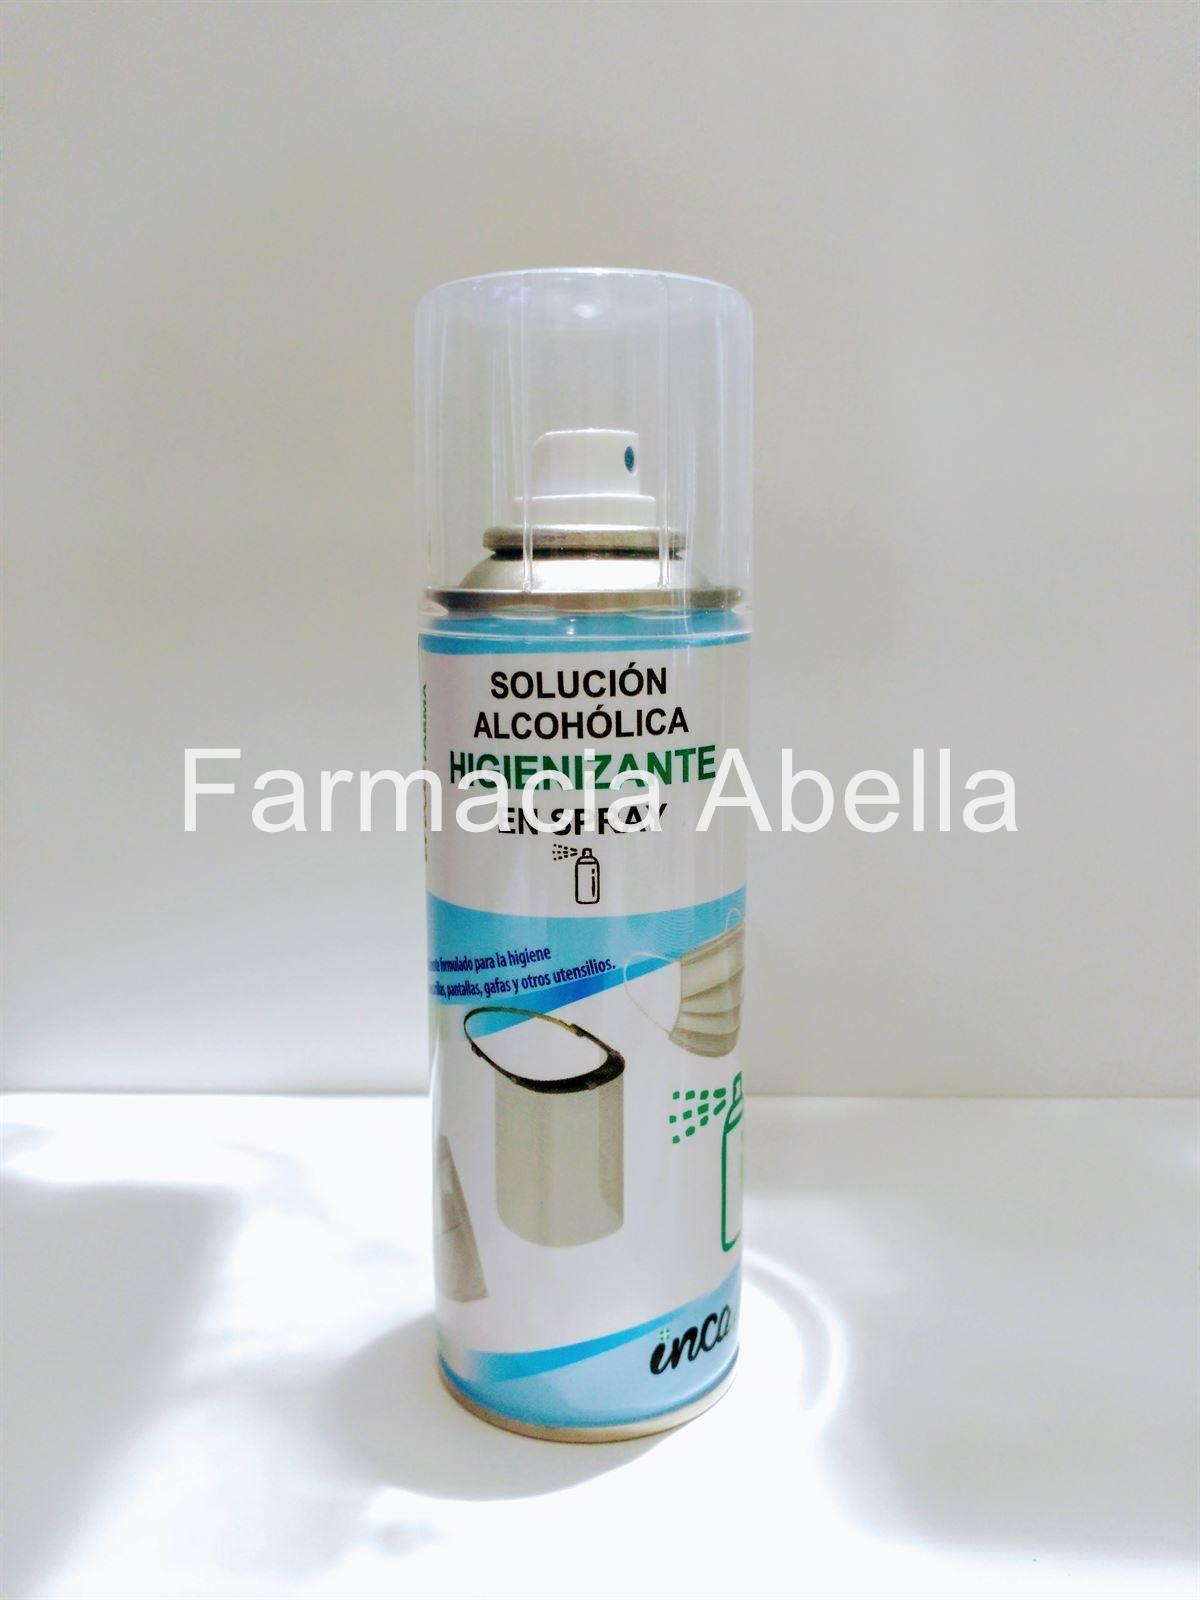 Solución alcohólica higienizante en spray incafarma 200 ml - Imagen 1